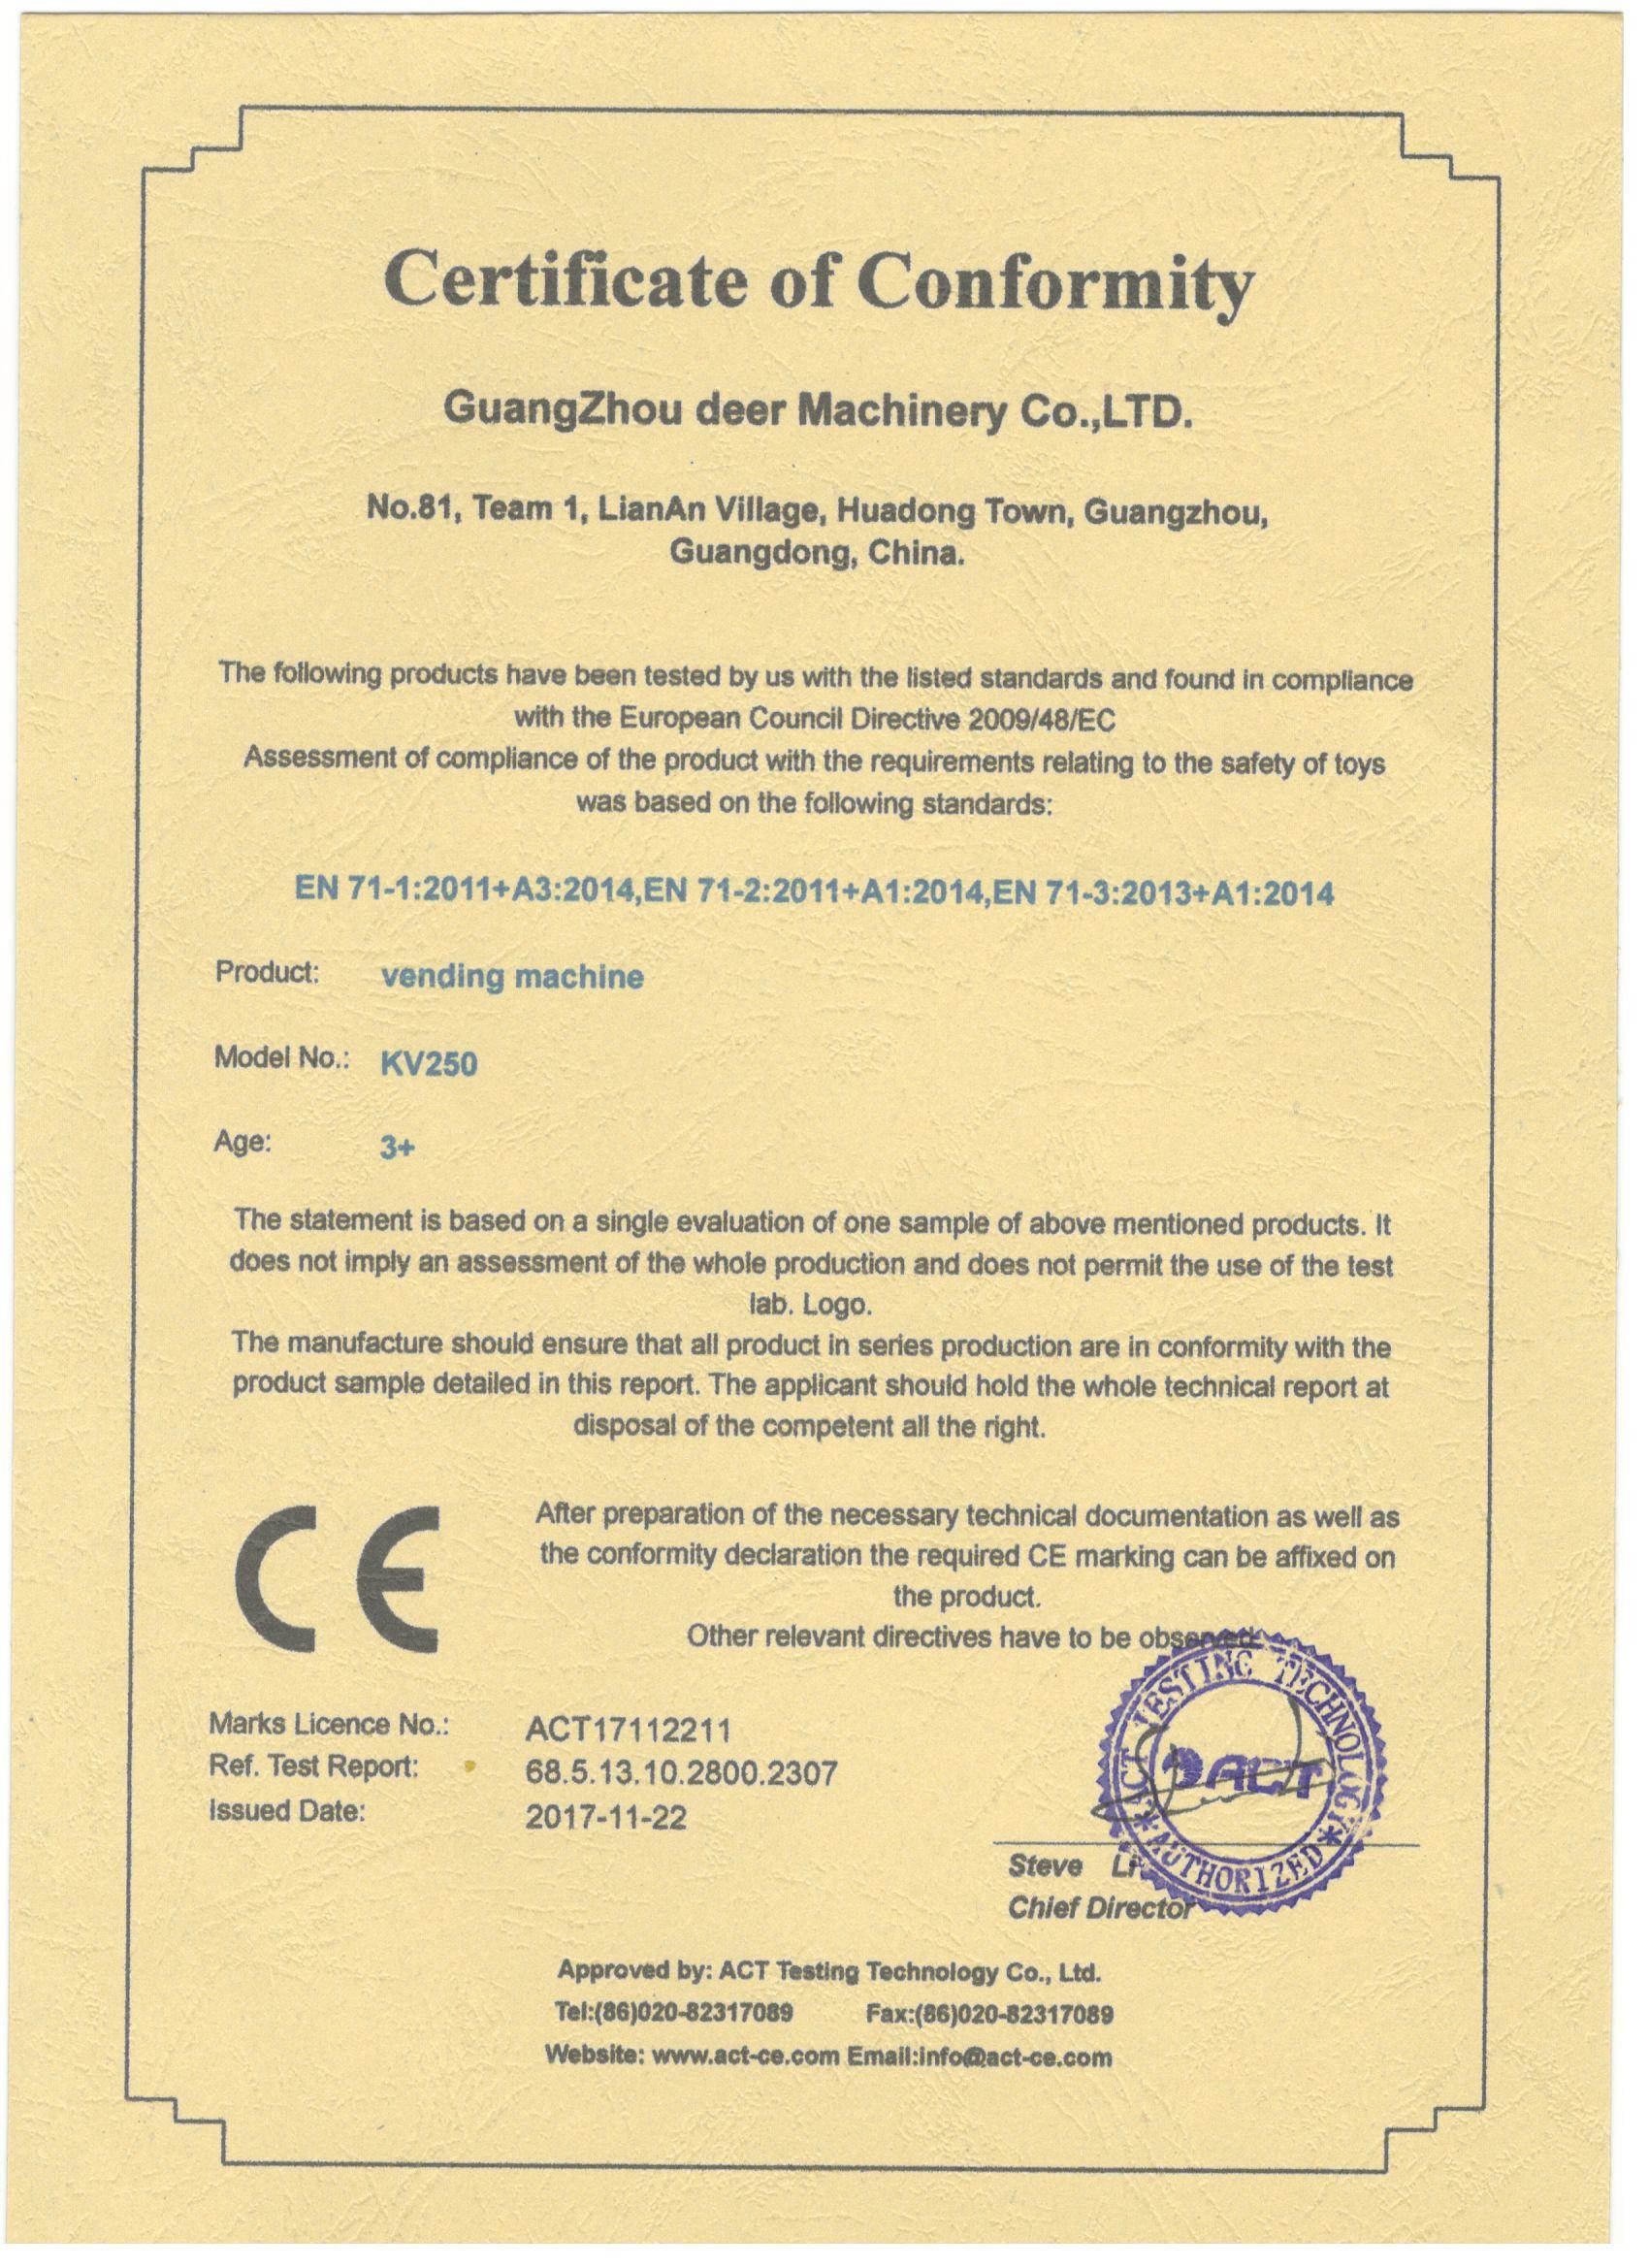 중국 Guangzhou Deer Machinery Co., Ltd. 인증